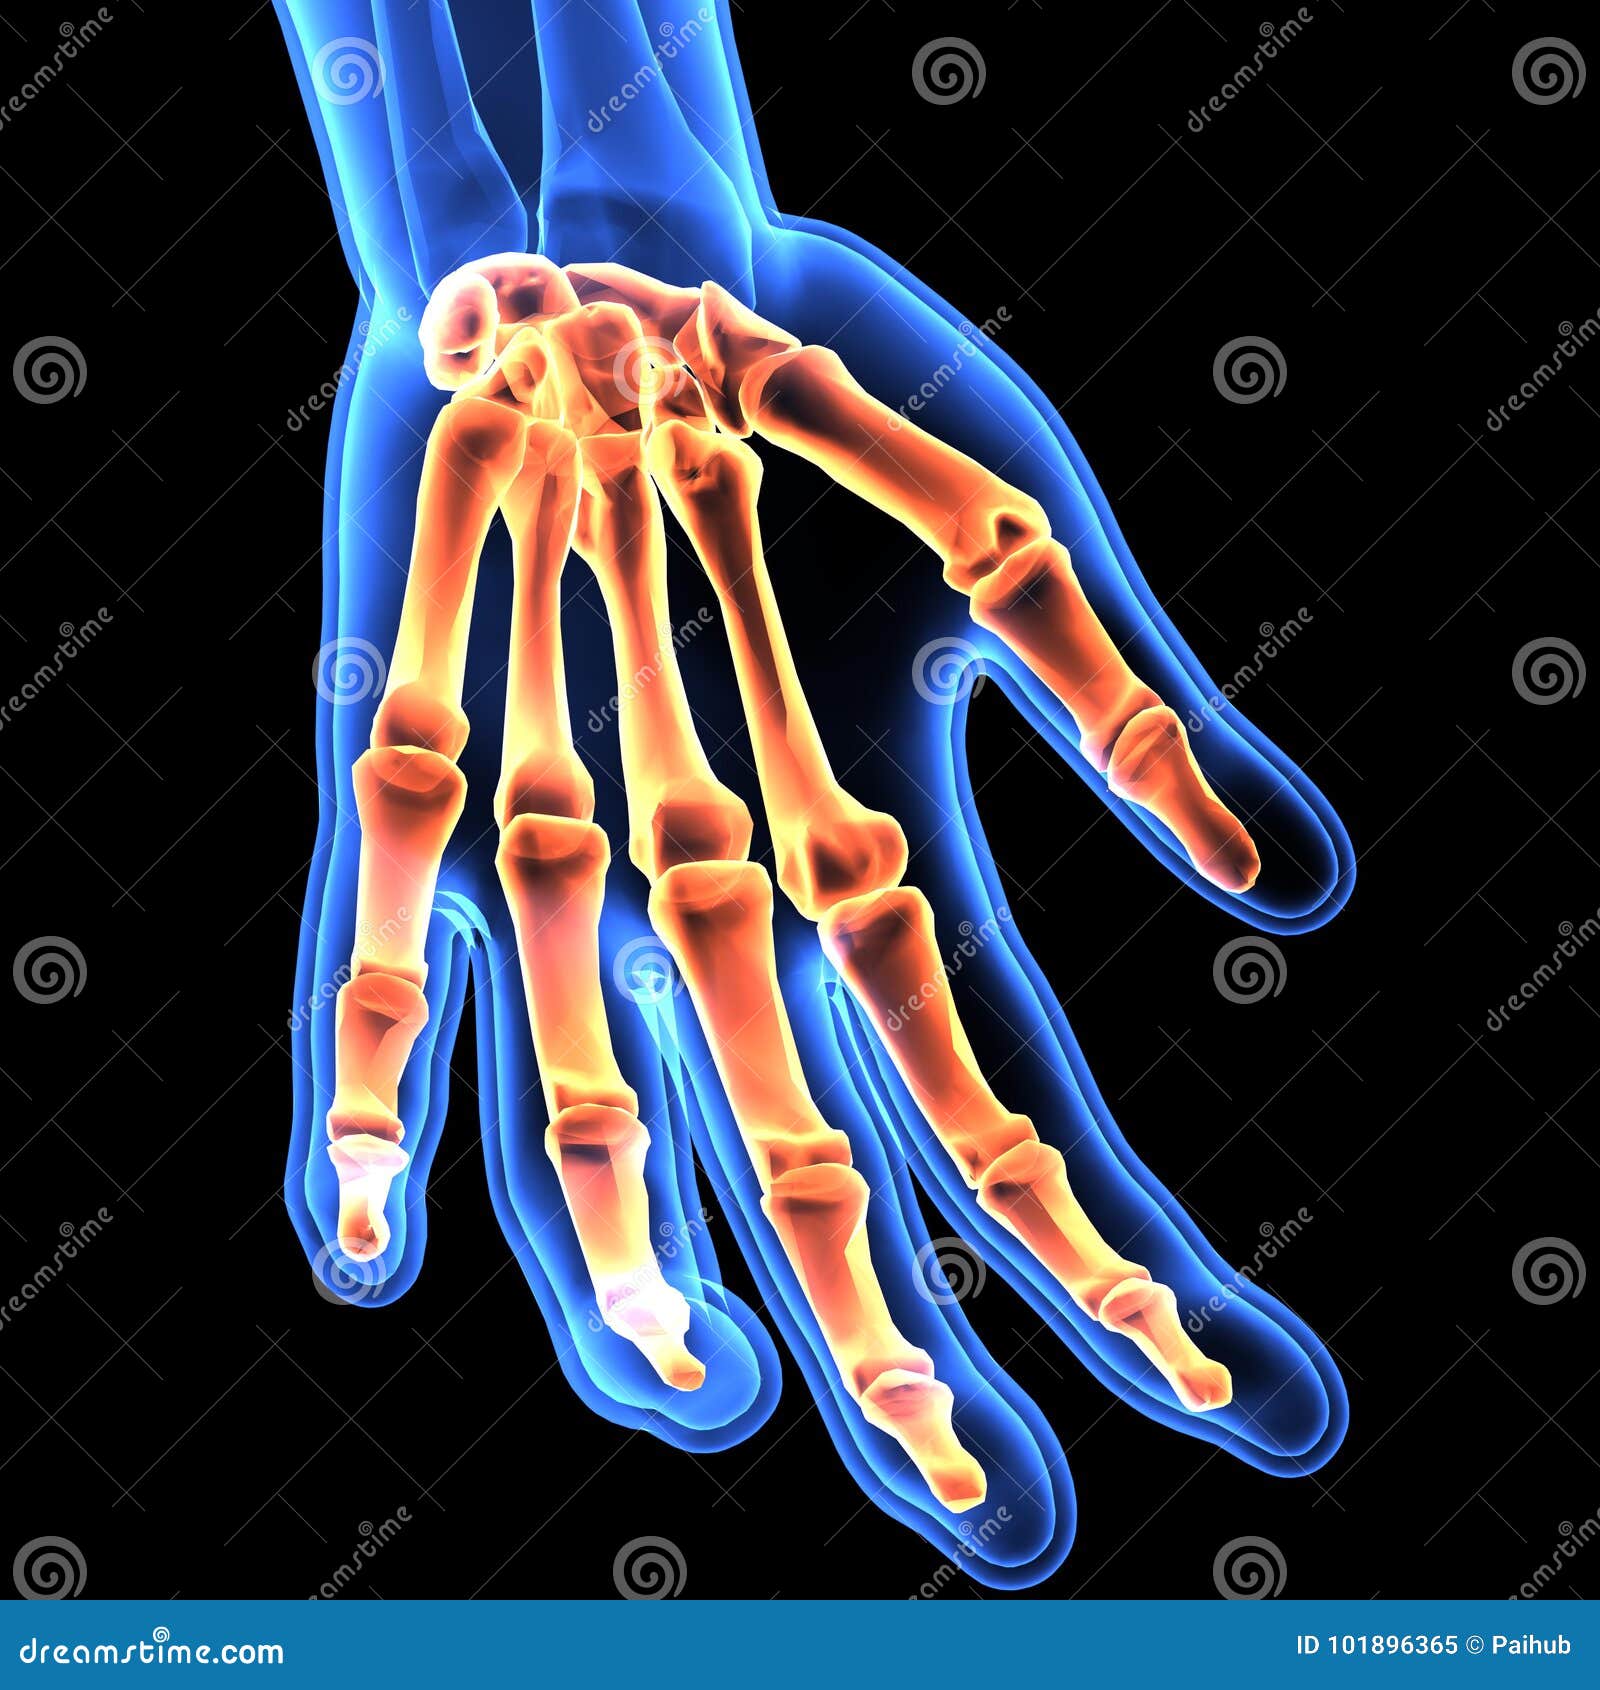 右手手腕骨骼正常吗，求专业人士。不胜感激_百度知道